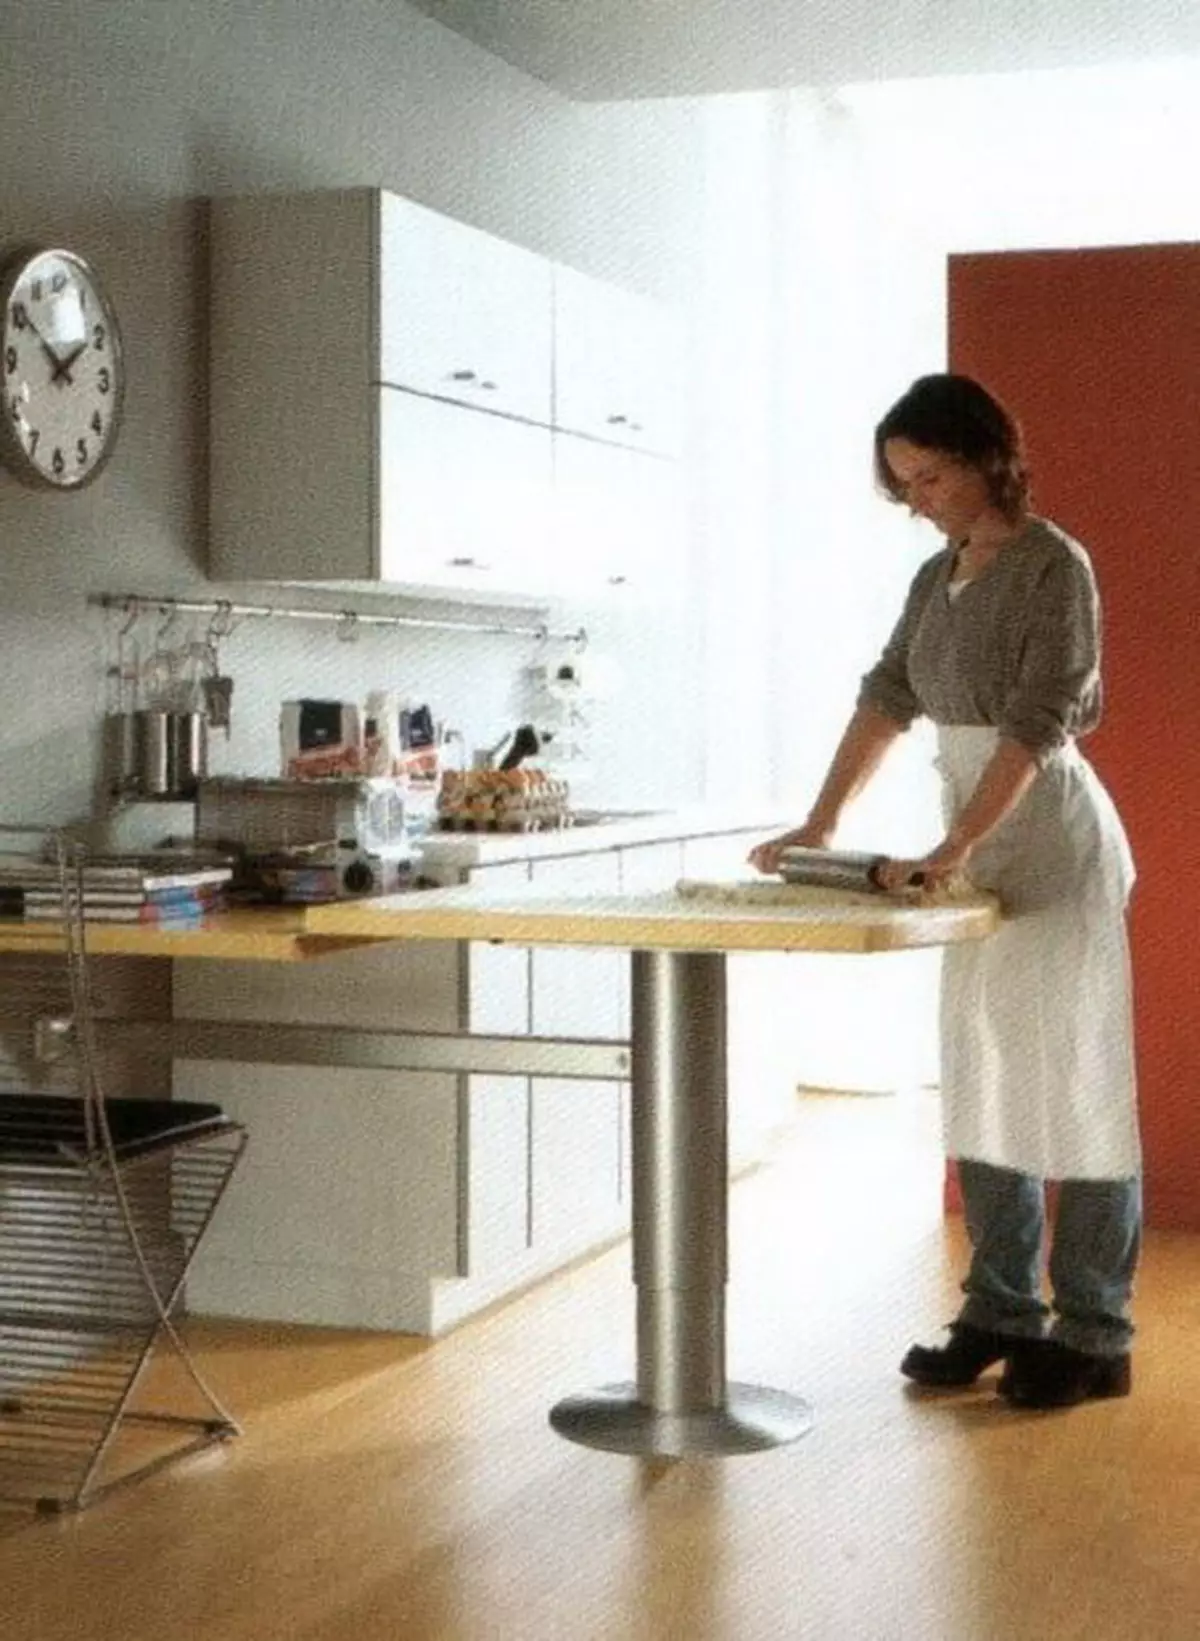 باورچی خانے کے کارکنوں کی میزیں (49 فوٹو): ہیڈلائرز سے باورچی خانے کے لئے موبائل کاٹنے کی میزیں، پناہ گاہوں اور دیگر اختیارات کے ساتھ پیداوار پیشہ ورانہ میزیں 24846_33